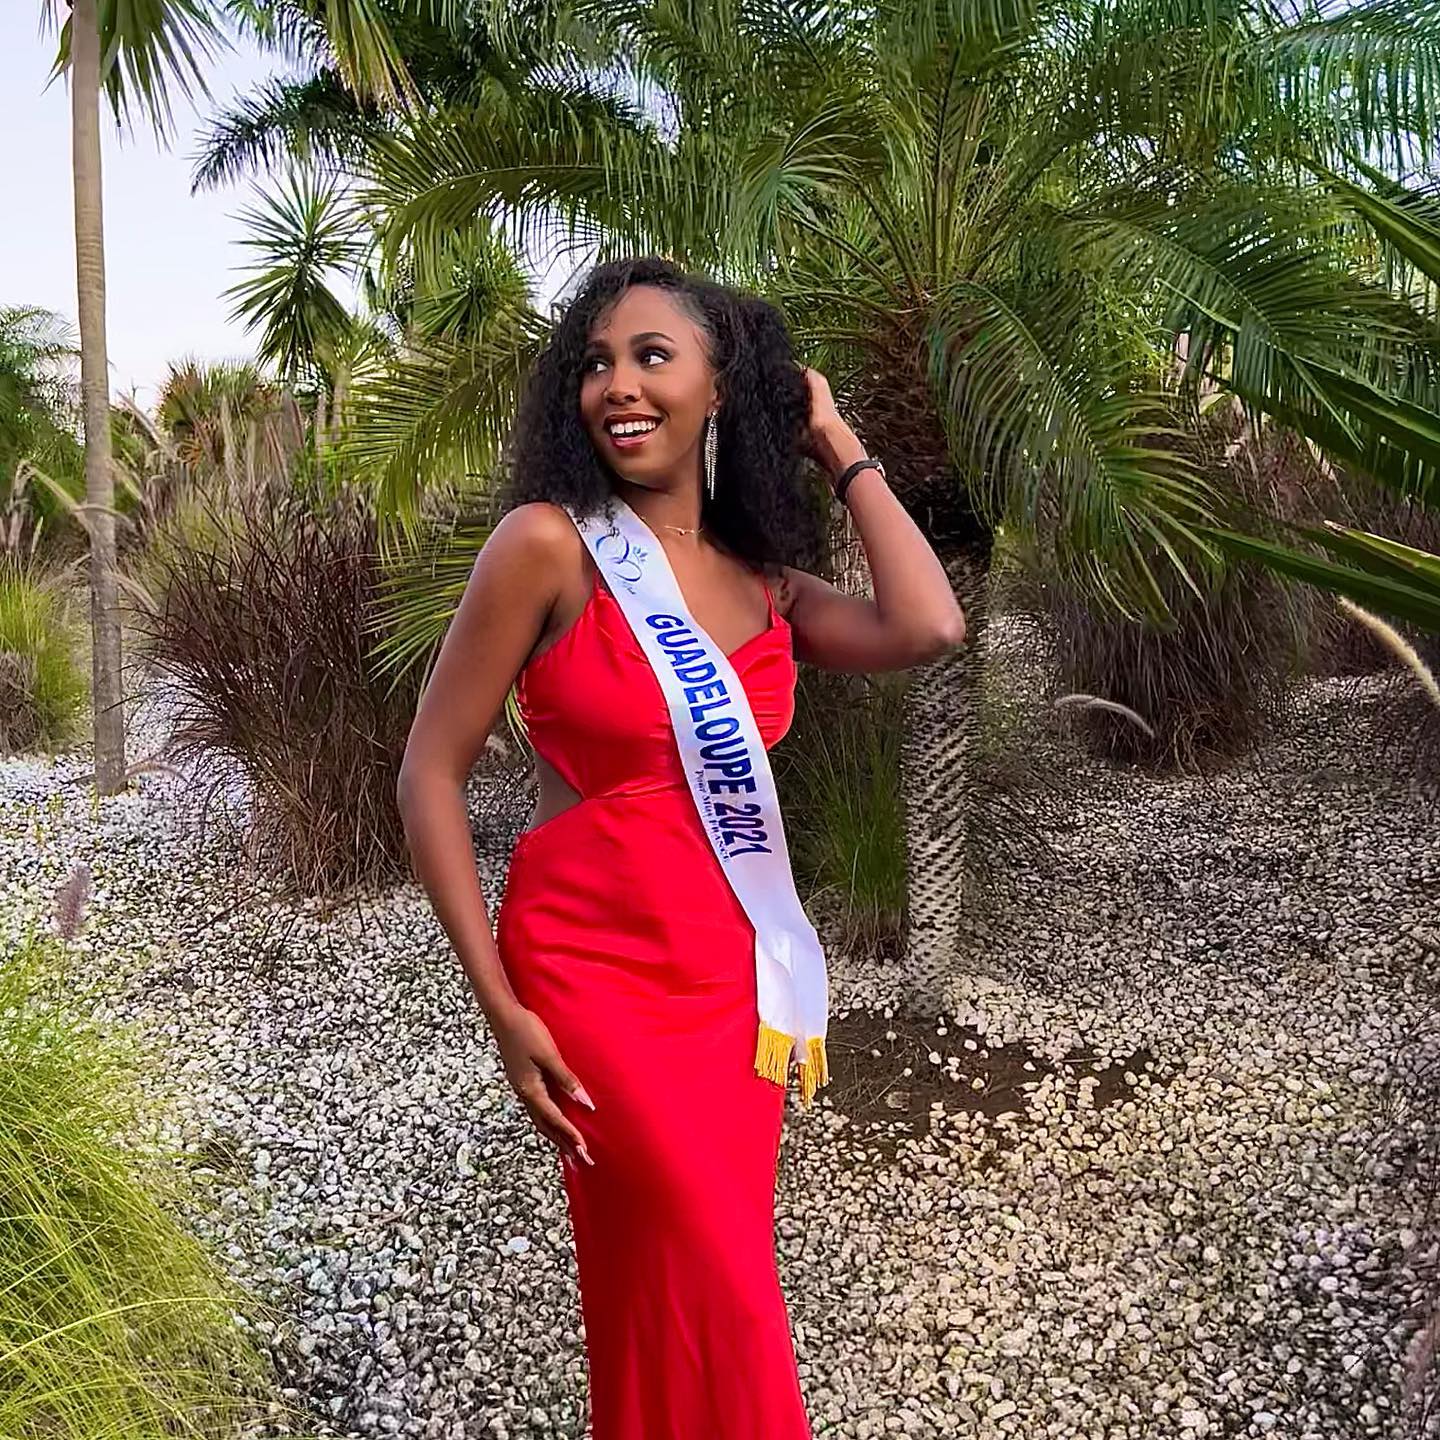     Miss Guadeloupe 2022 : le casting est ouvert pour succéder à Ludivine Edmond 

